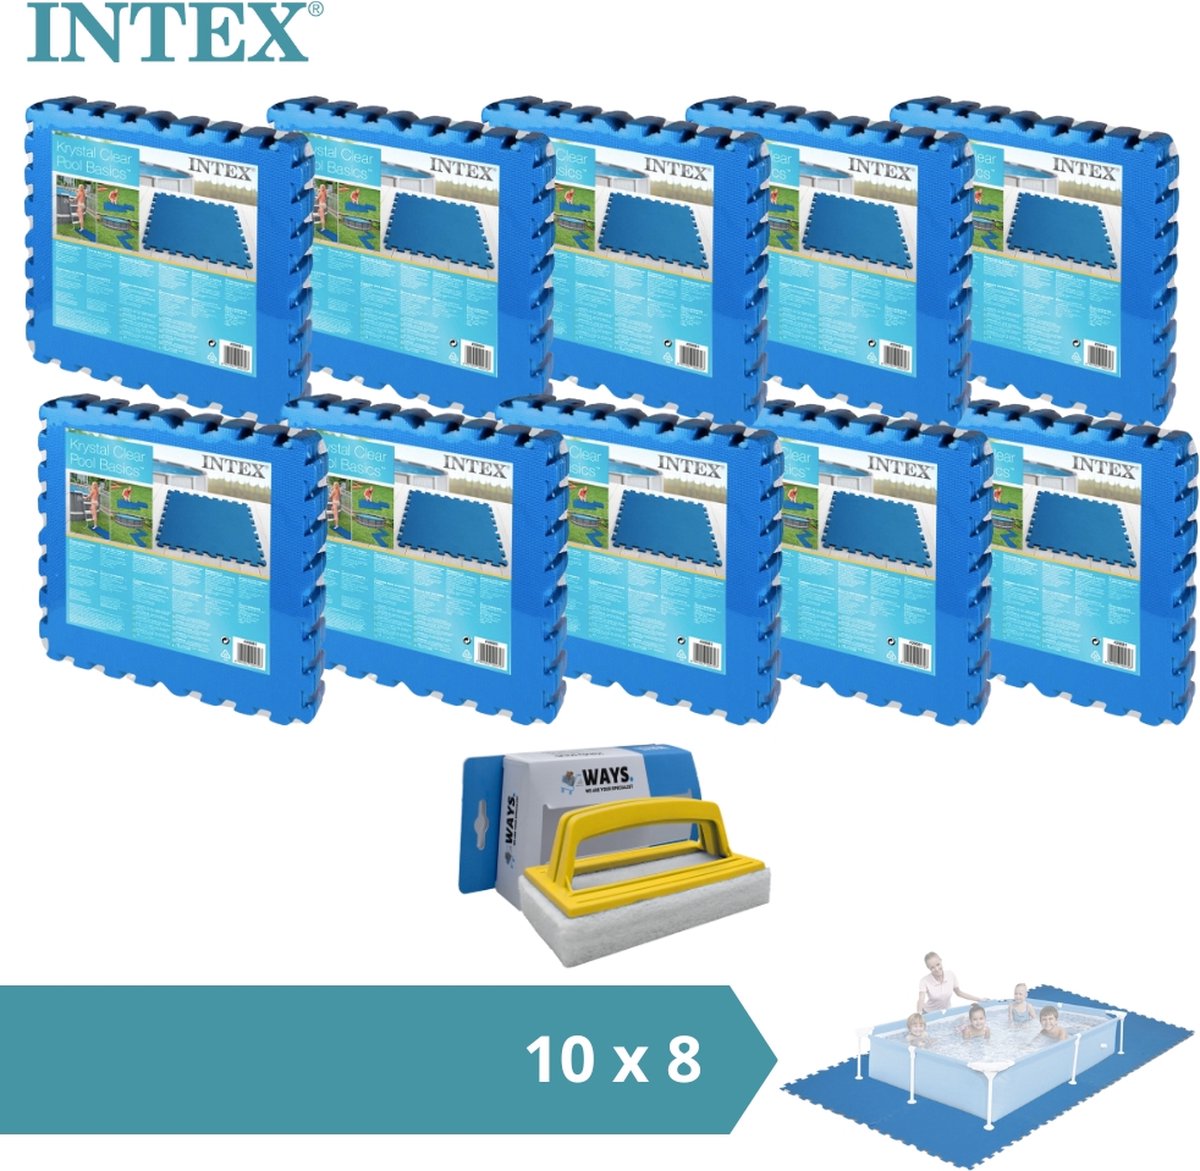 Intex - Zwembadtegels - 10 verpakkingen van 8 tegels - 20m² & WAYS scrubborstel